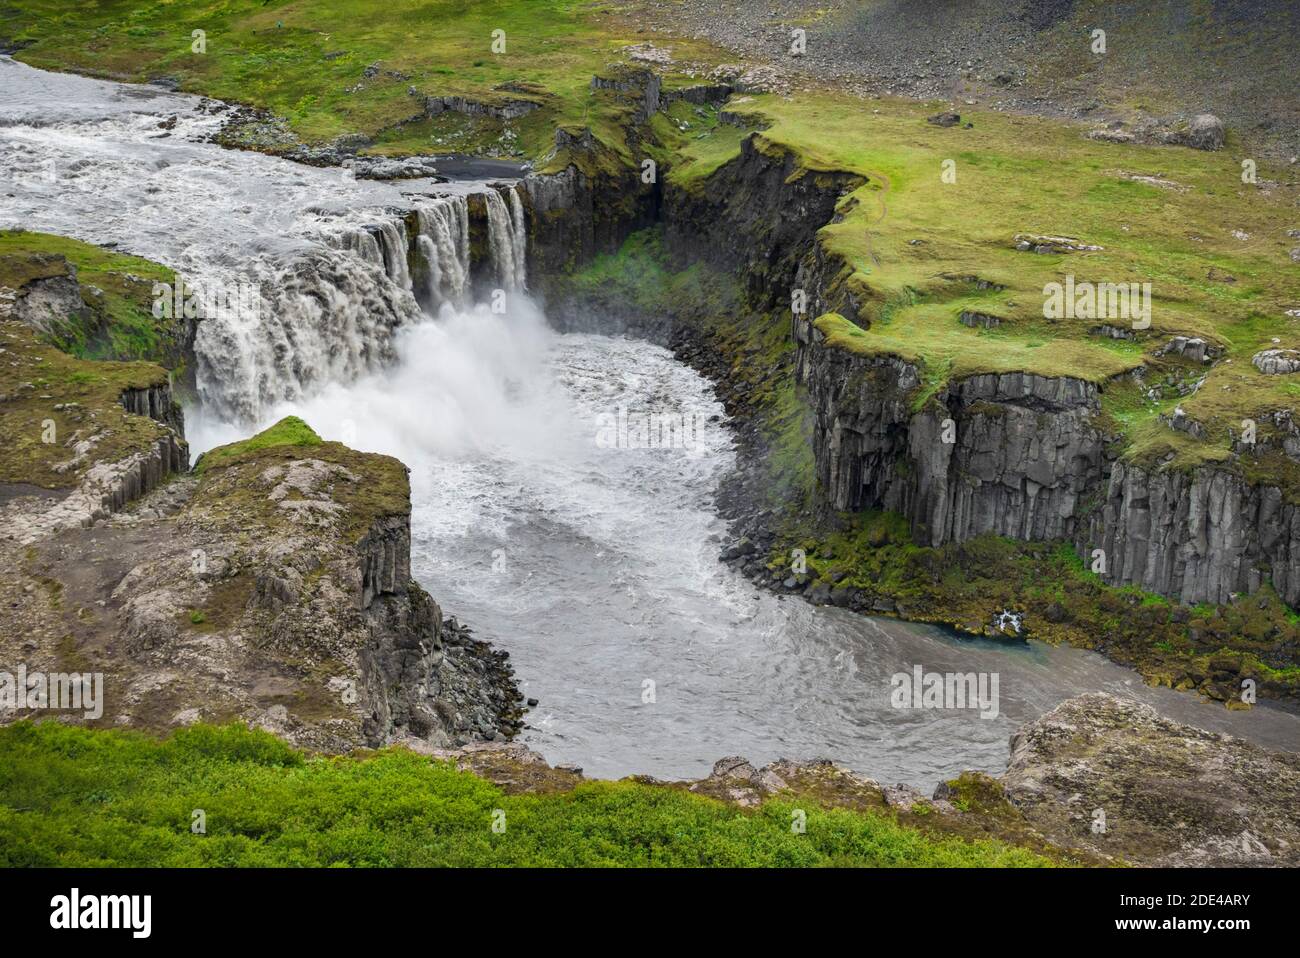 Waterfall falls from green volcanic plain over basalt columns into a canyon, Hafragilsfoss, Joekulsargljufur National Park, Norourping Stock Photo